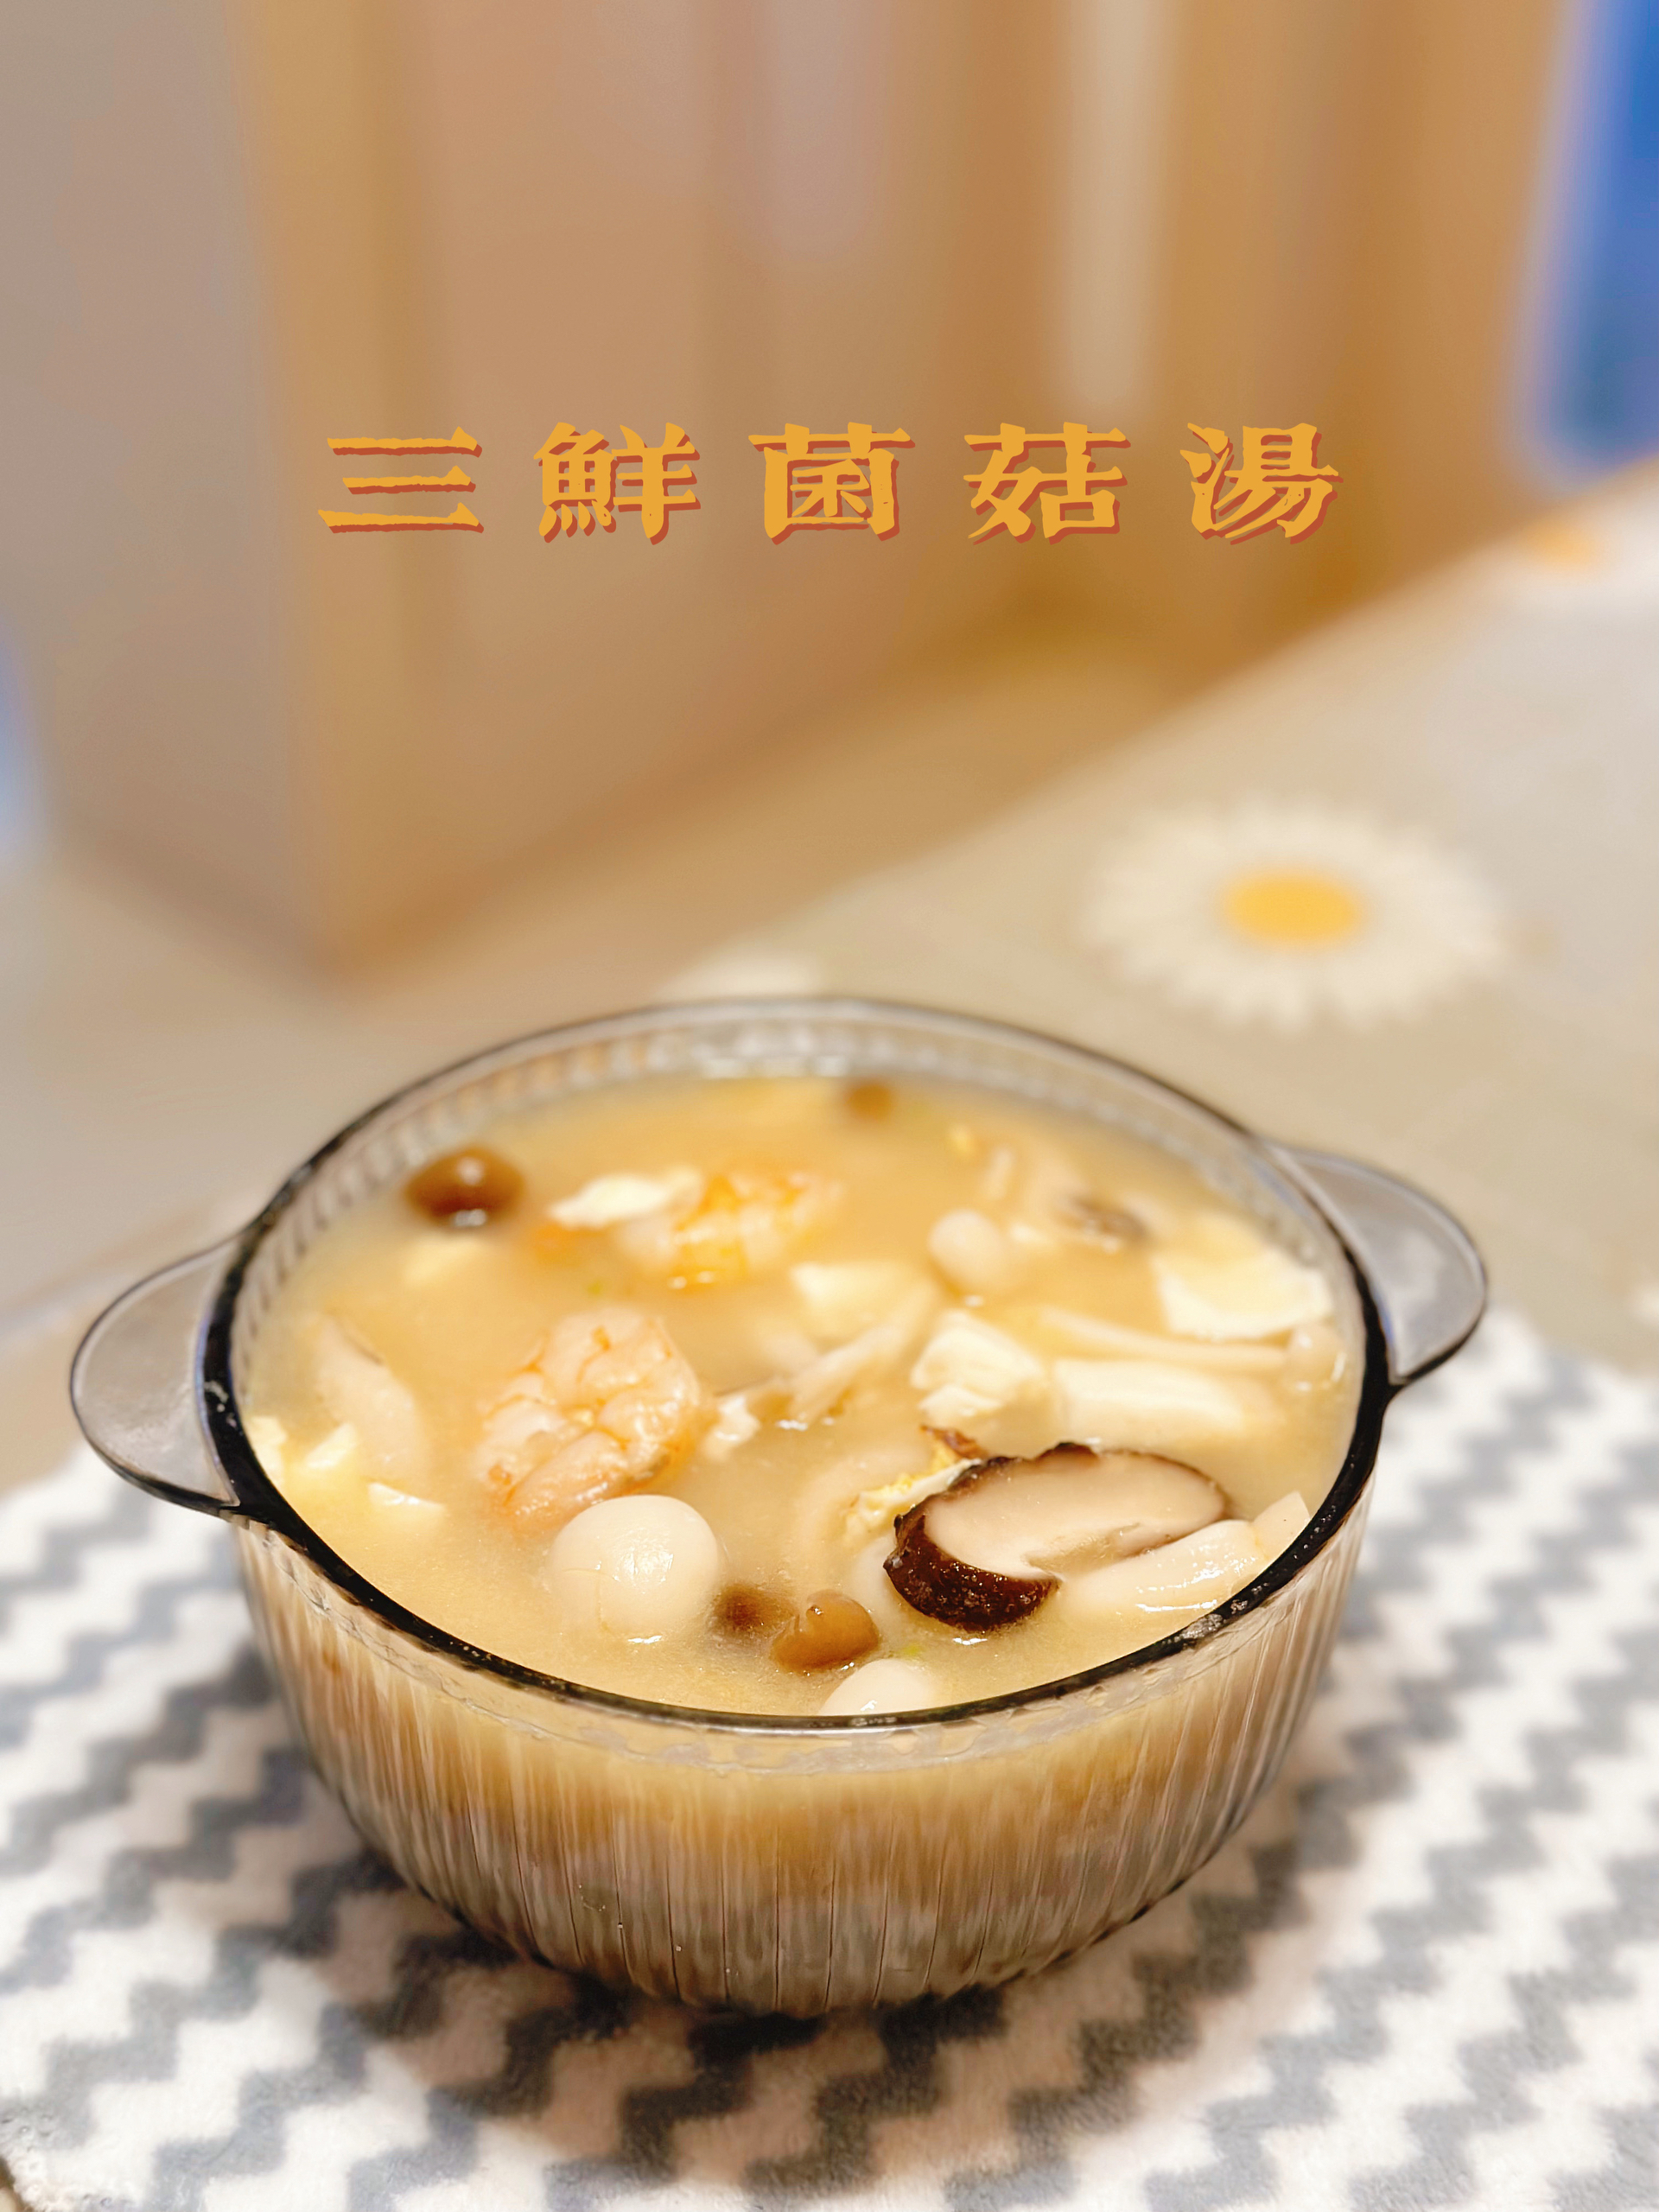 饱腹掉称✅鲜美浓郁的三鲜菌菇汤！